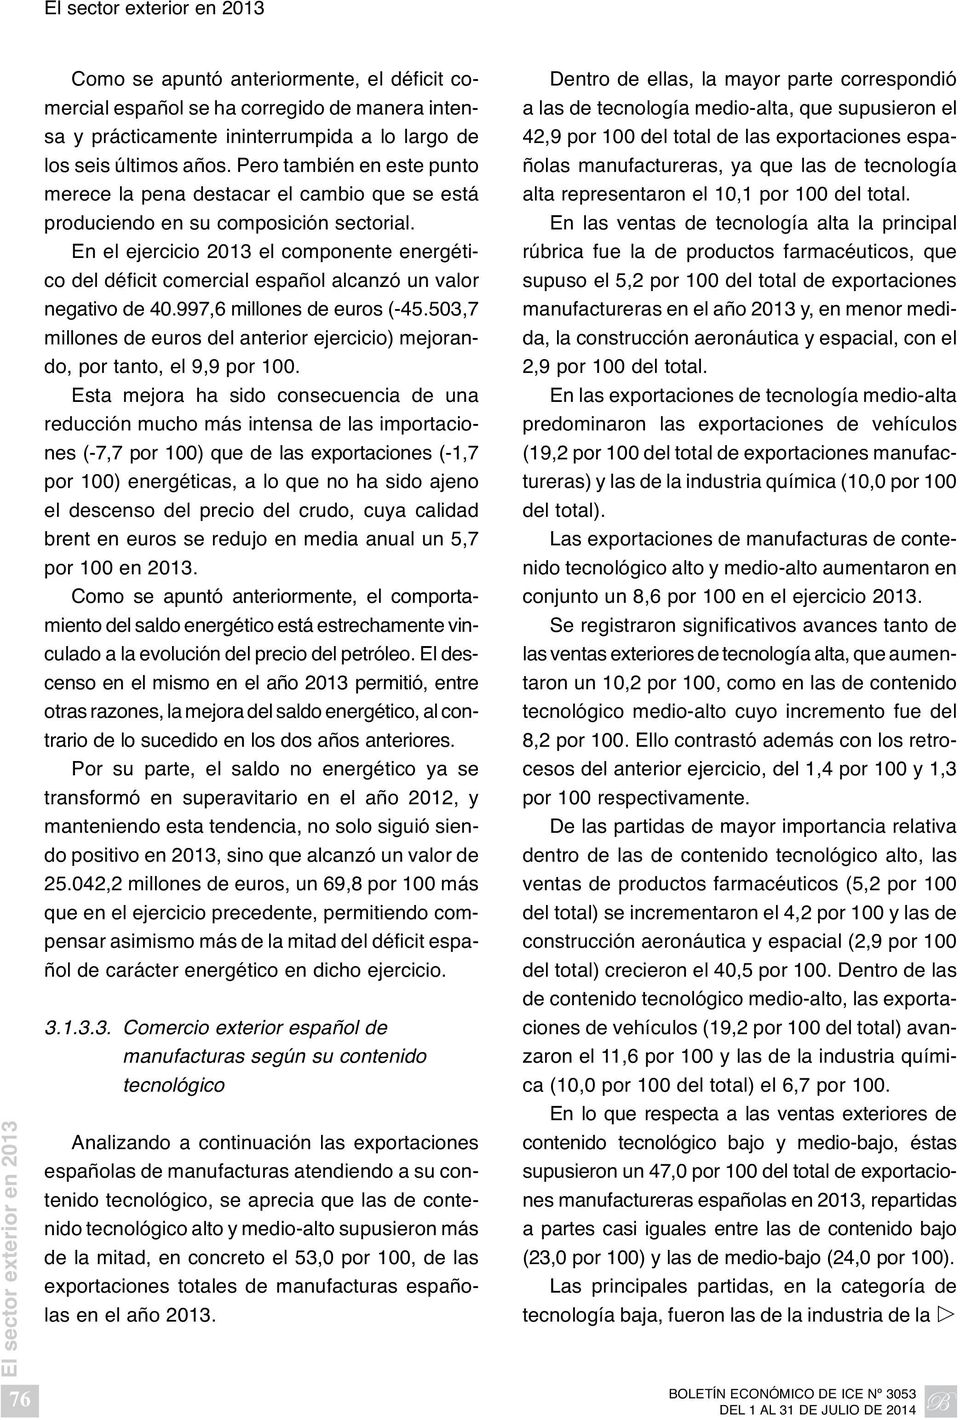 En el ejercicio 2013 el componente energético del déficit comercial español alcanzó un valor negativo de 40.997,6 millones de euros (-45.